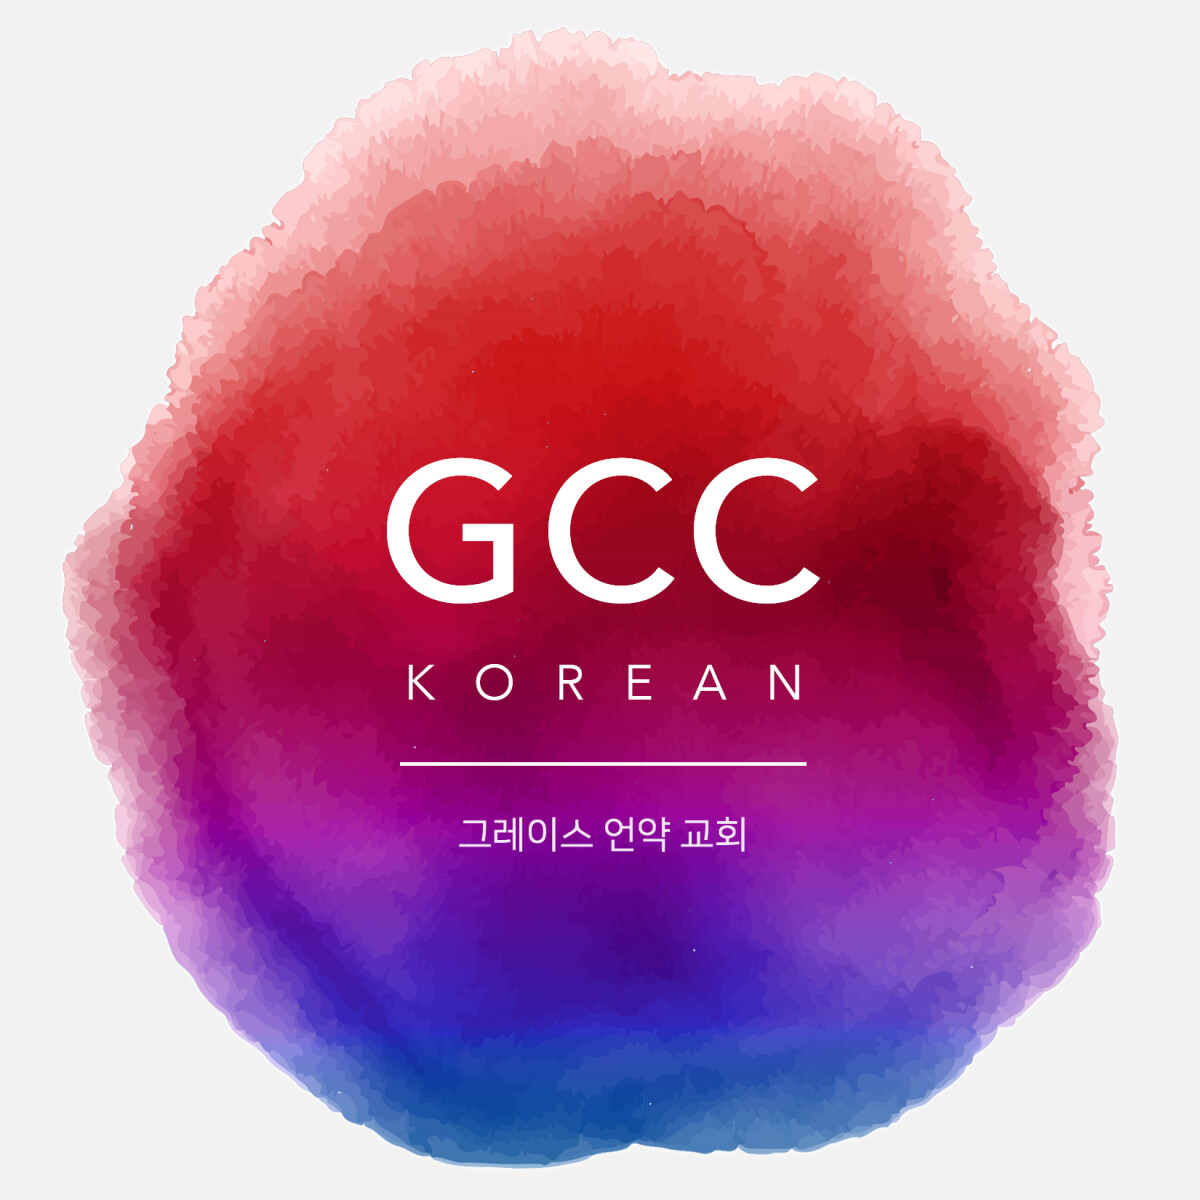 GCC Korean 12:45pm